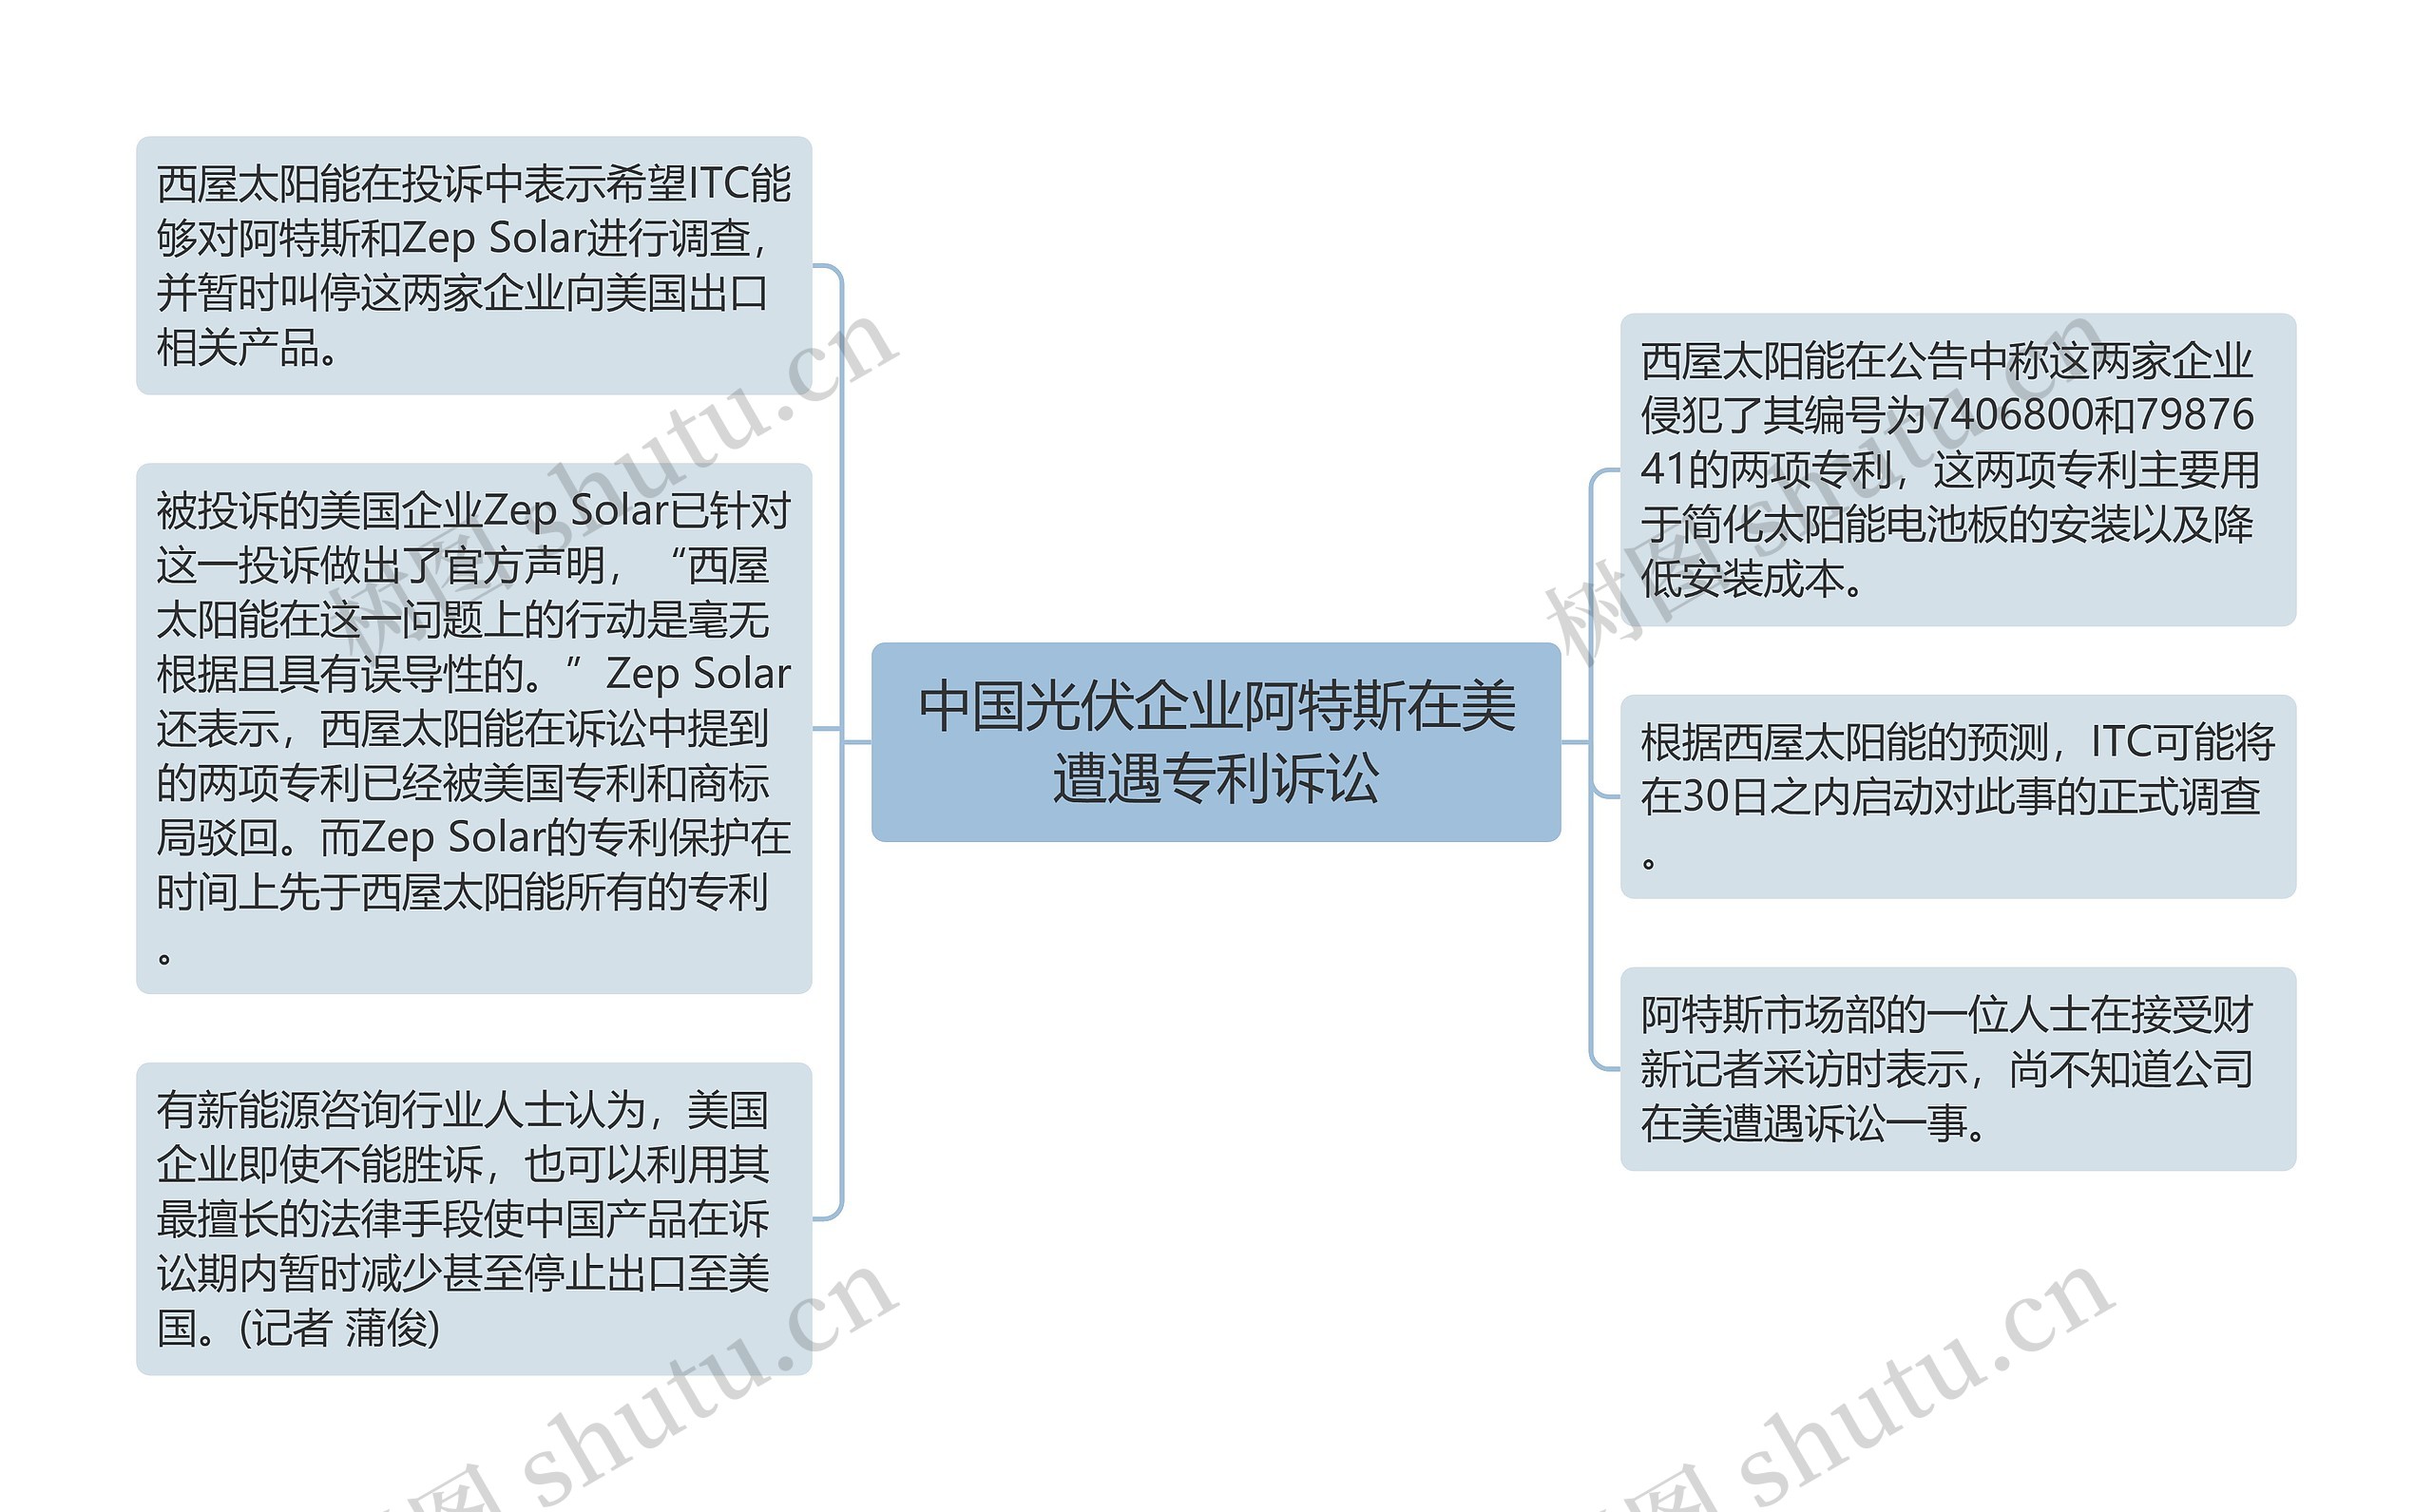 中国光伏企业阿特斯在美遭遇专利诉讼